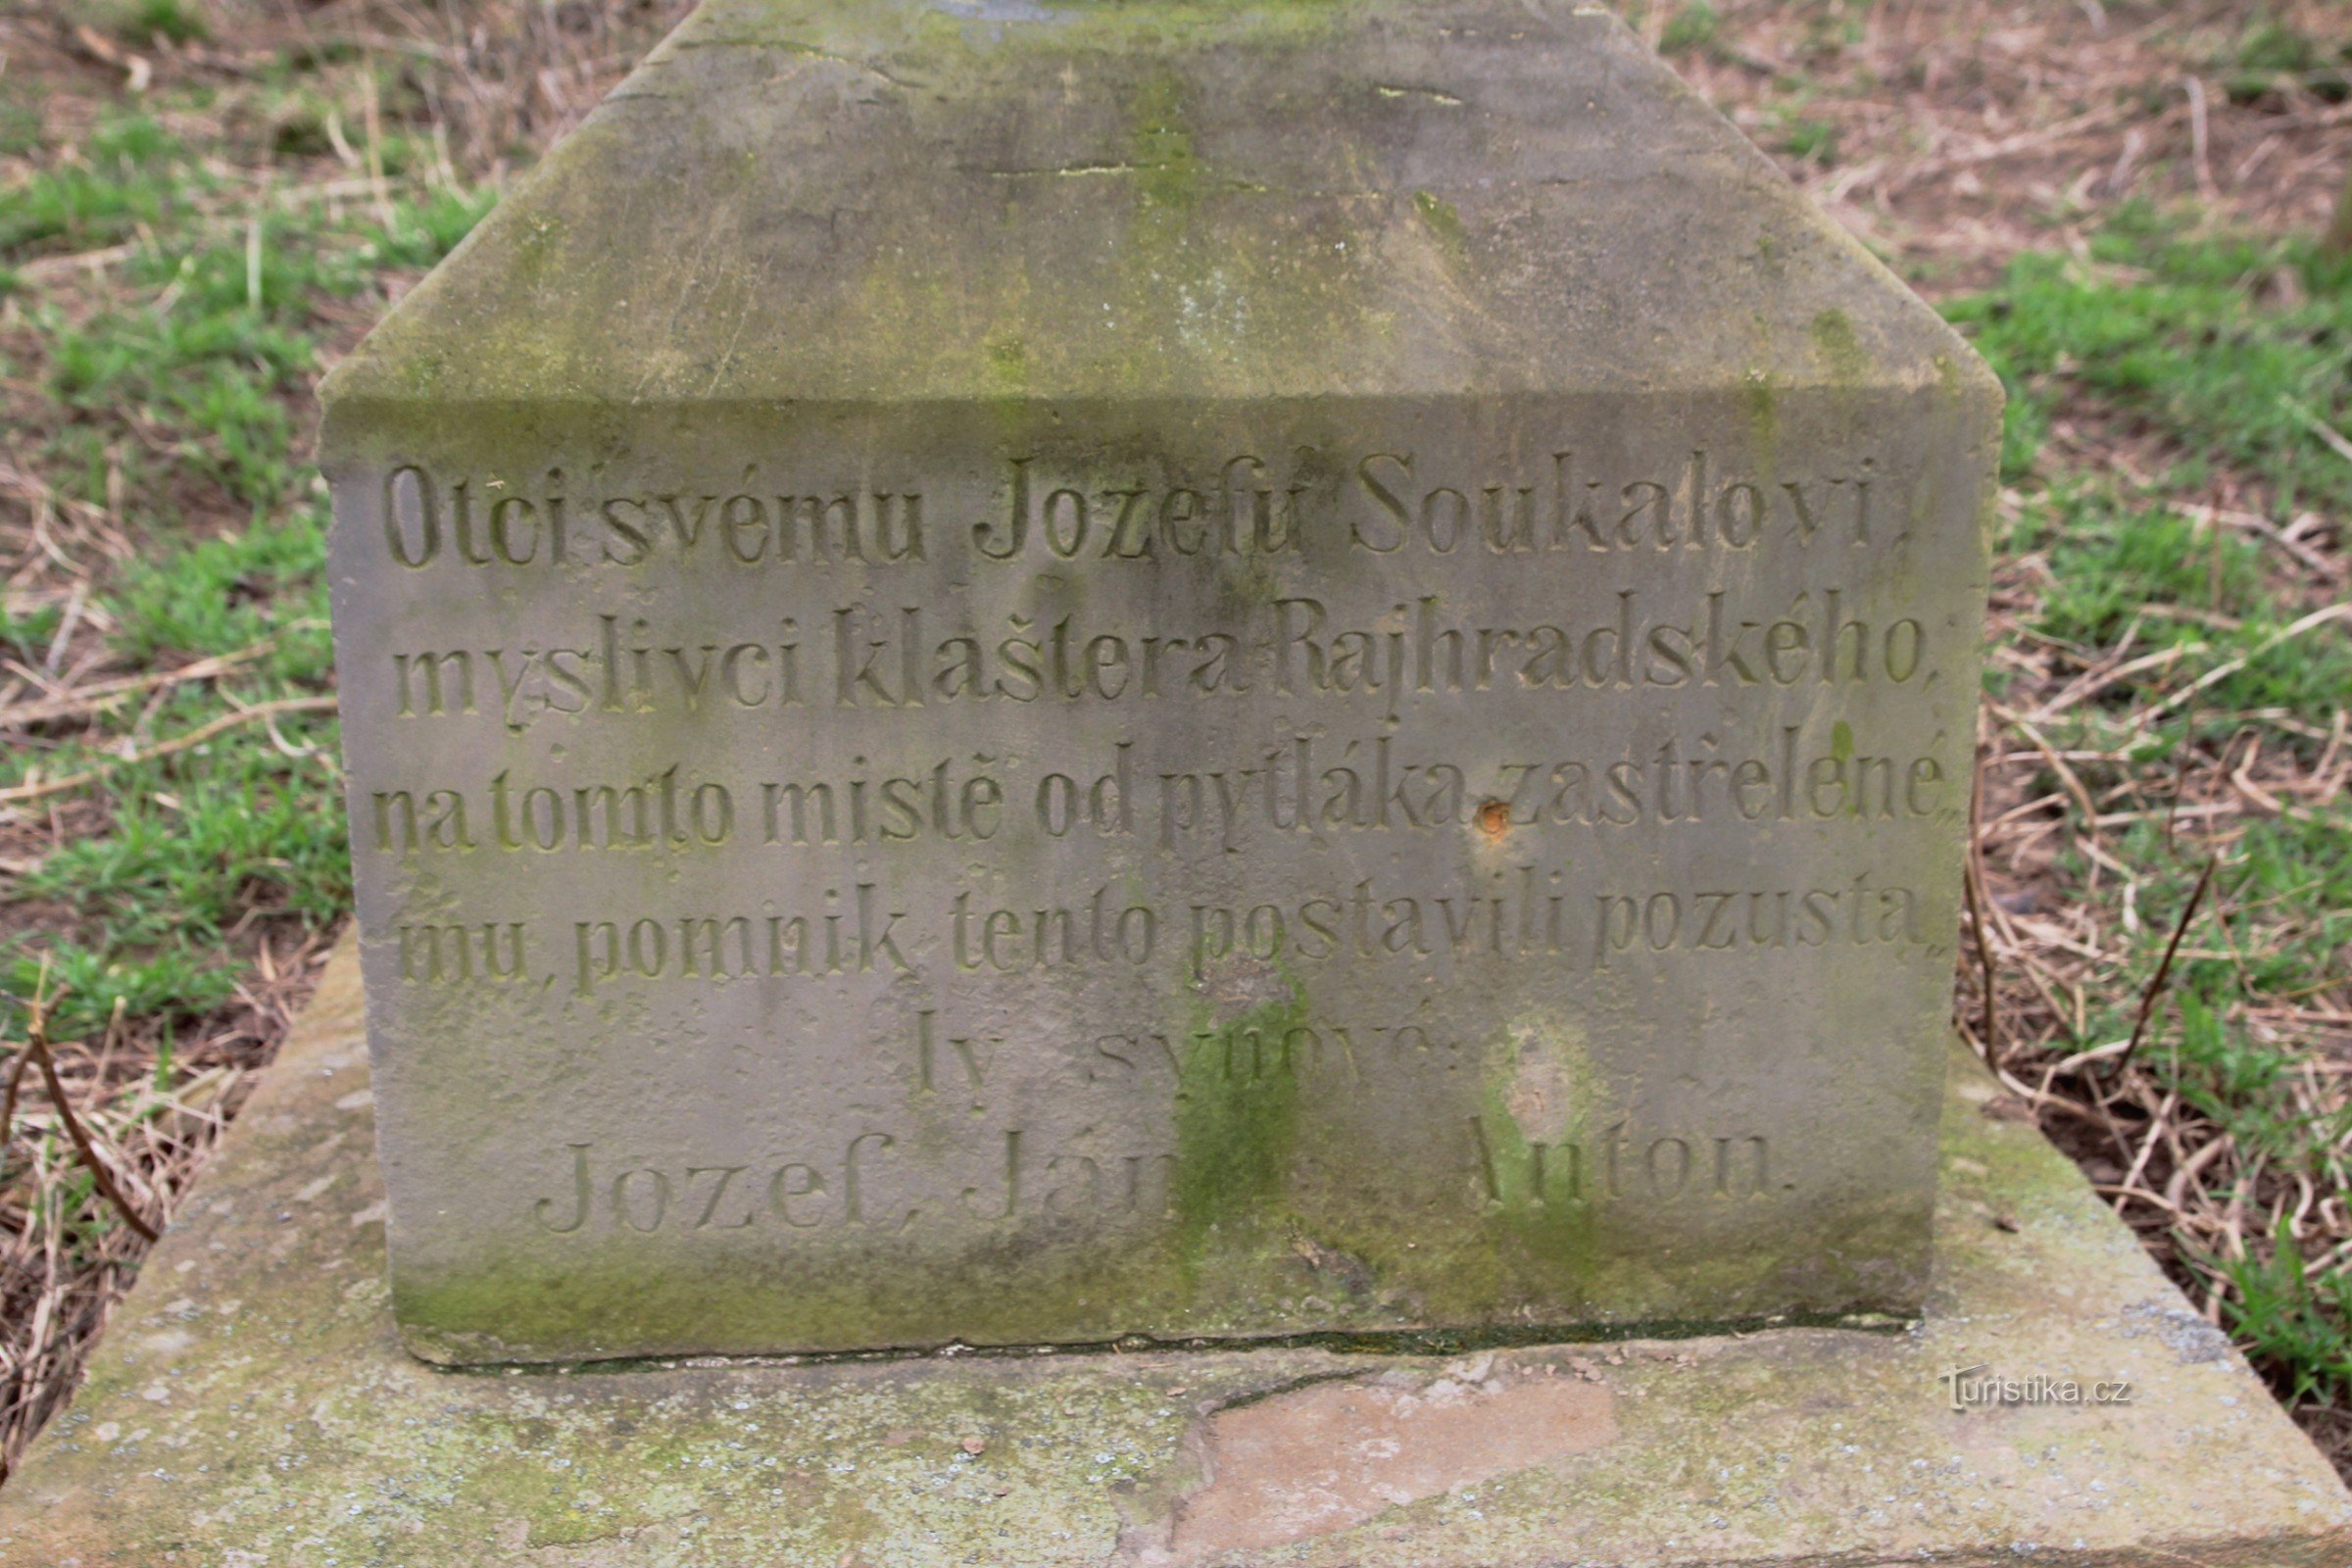 Detalhe da inscrição no monumento